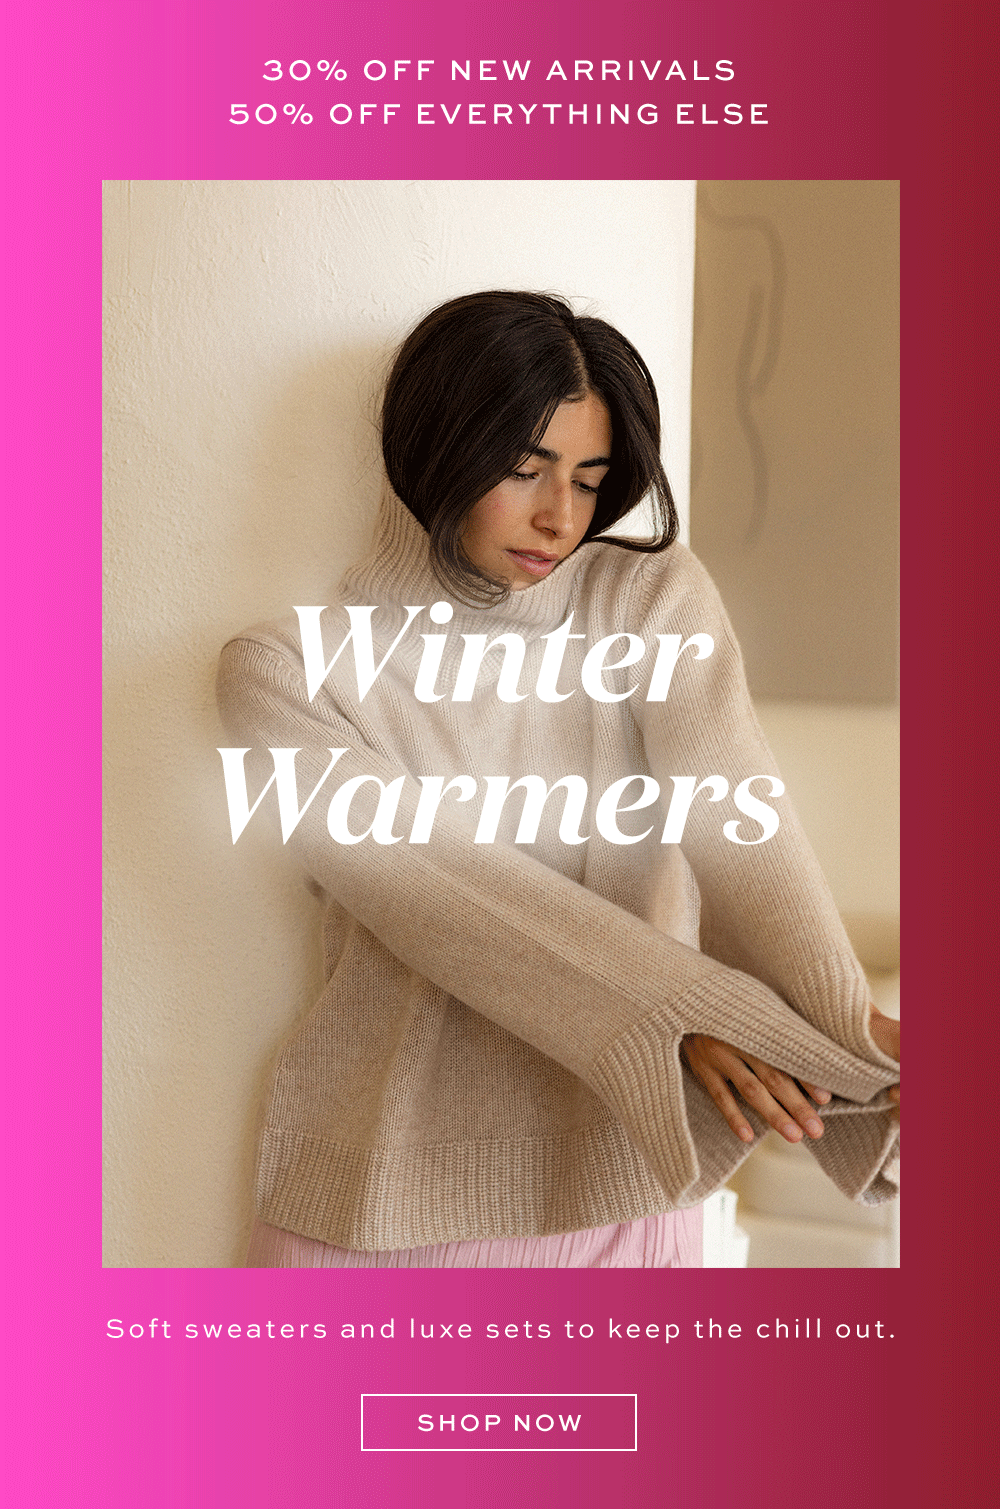 Winter warmers